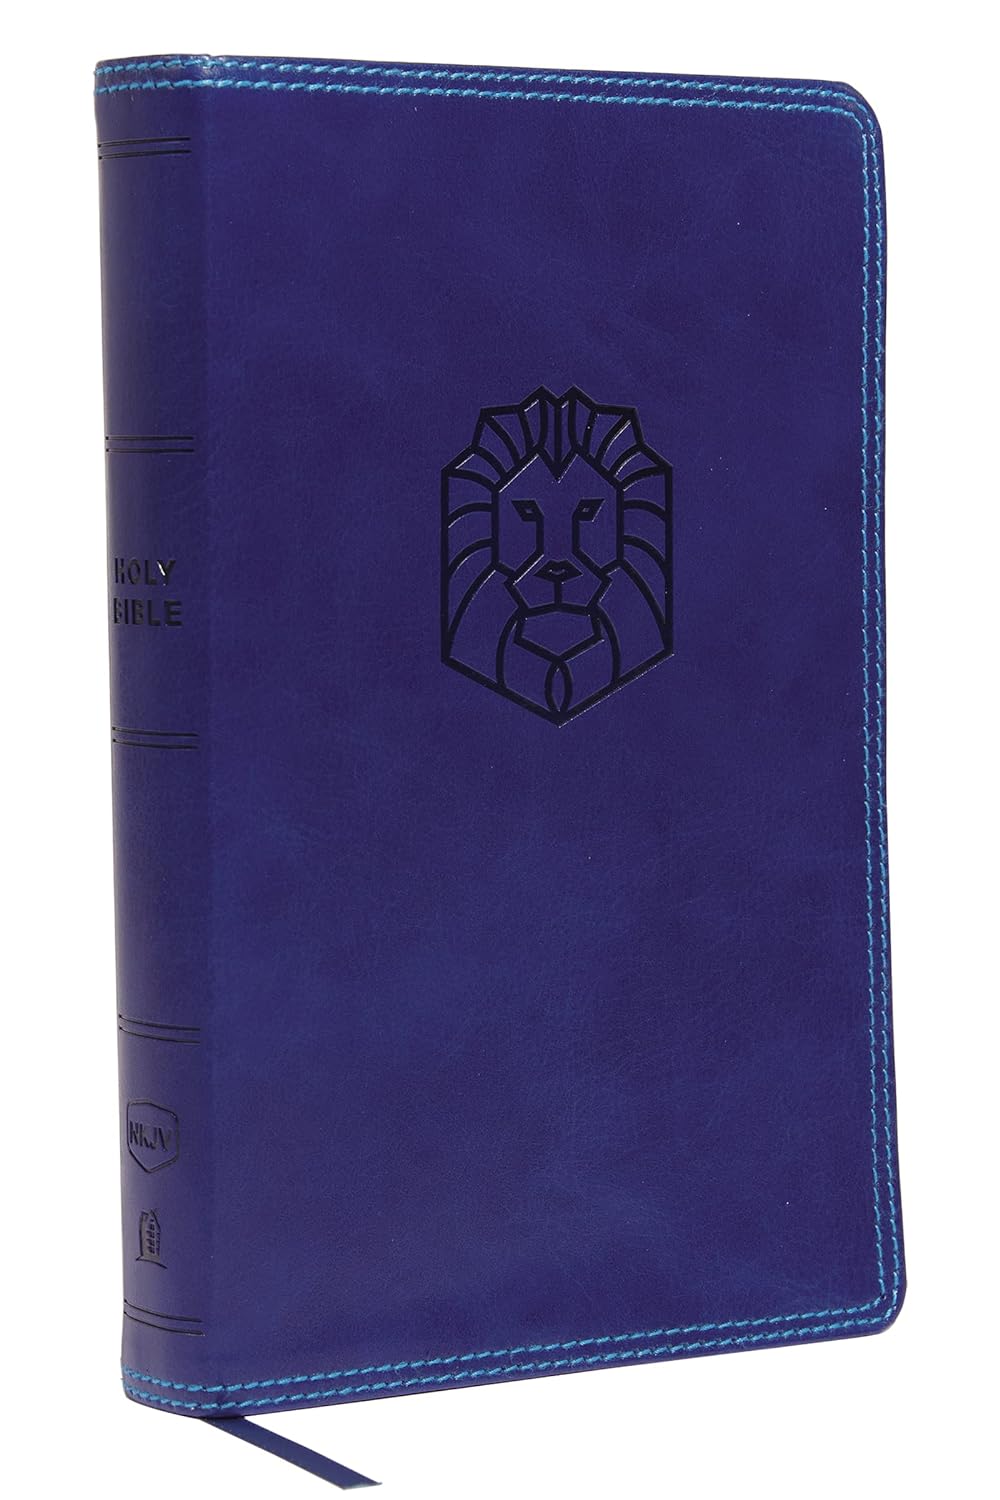 NKJV Holy Bible for Kids, Leathersoft, Comfort Print, Blue